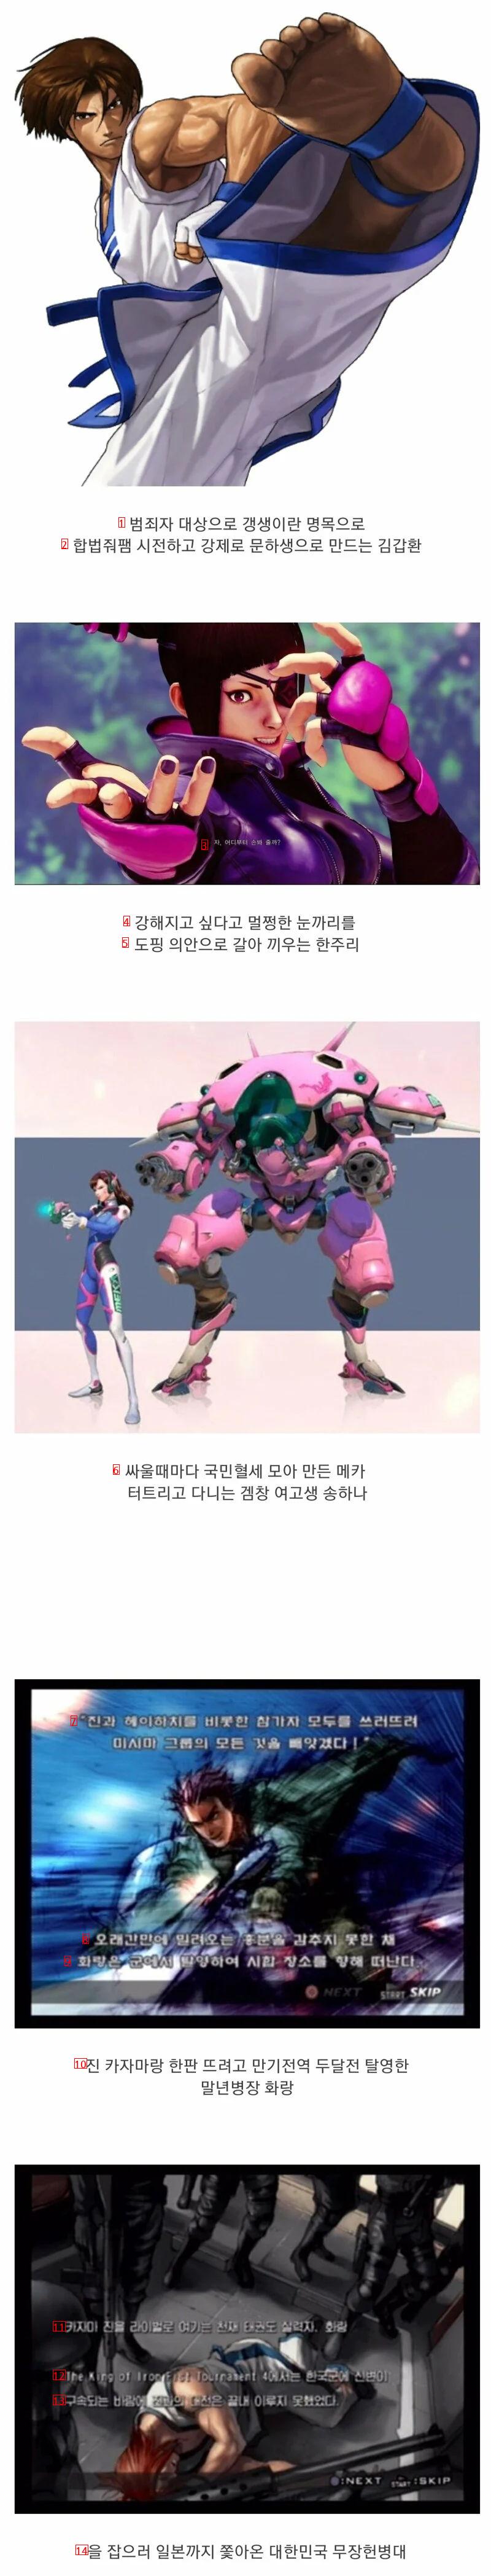 게임속에 등장하는 광기의 한국인들